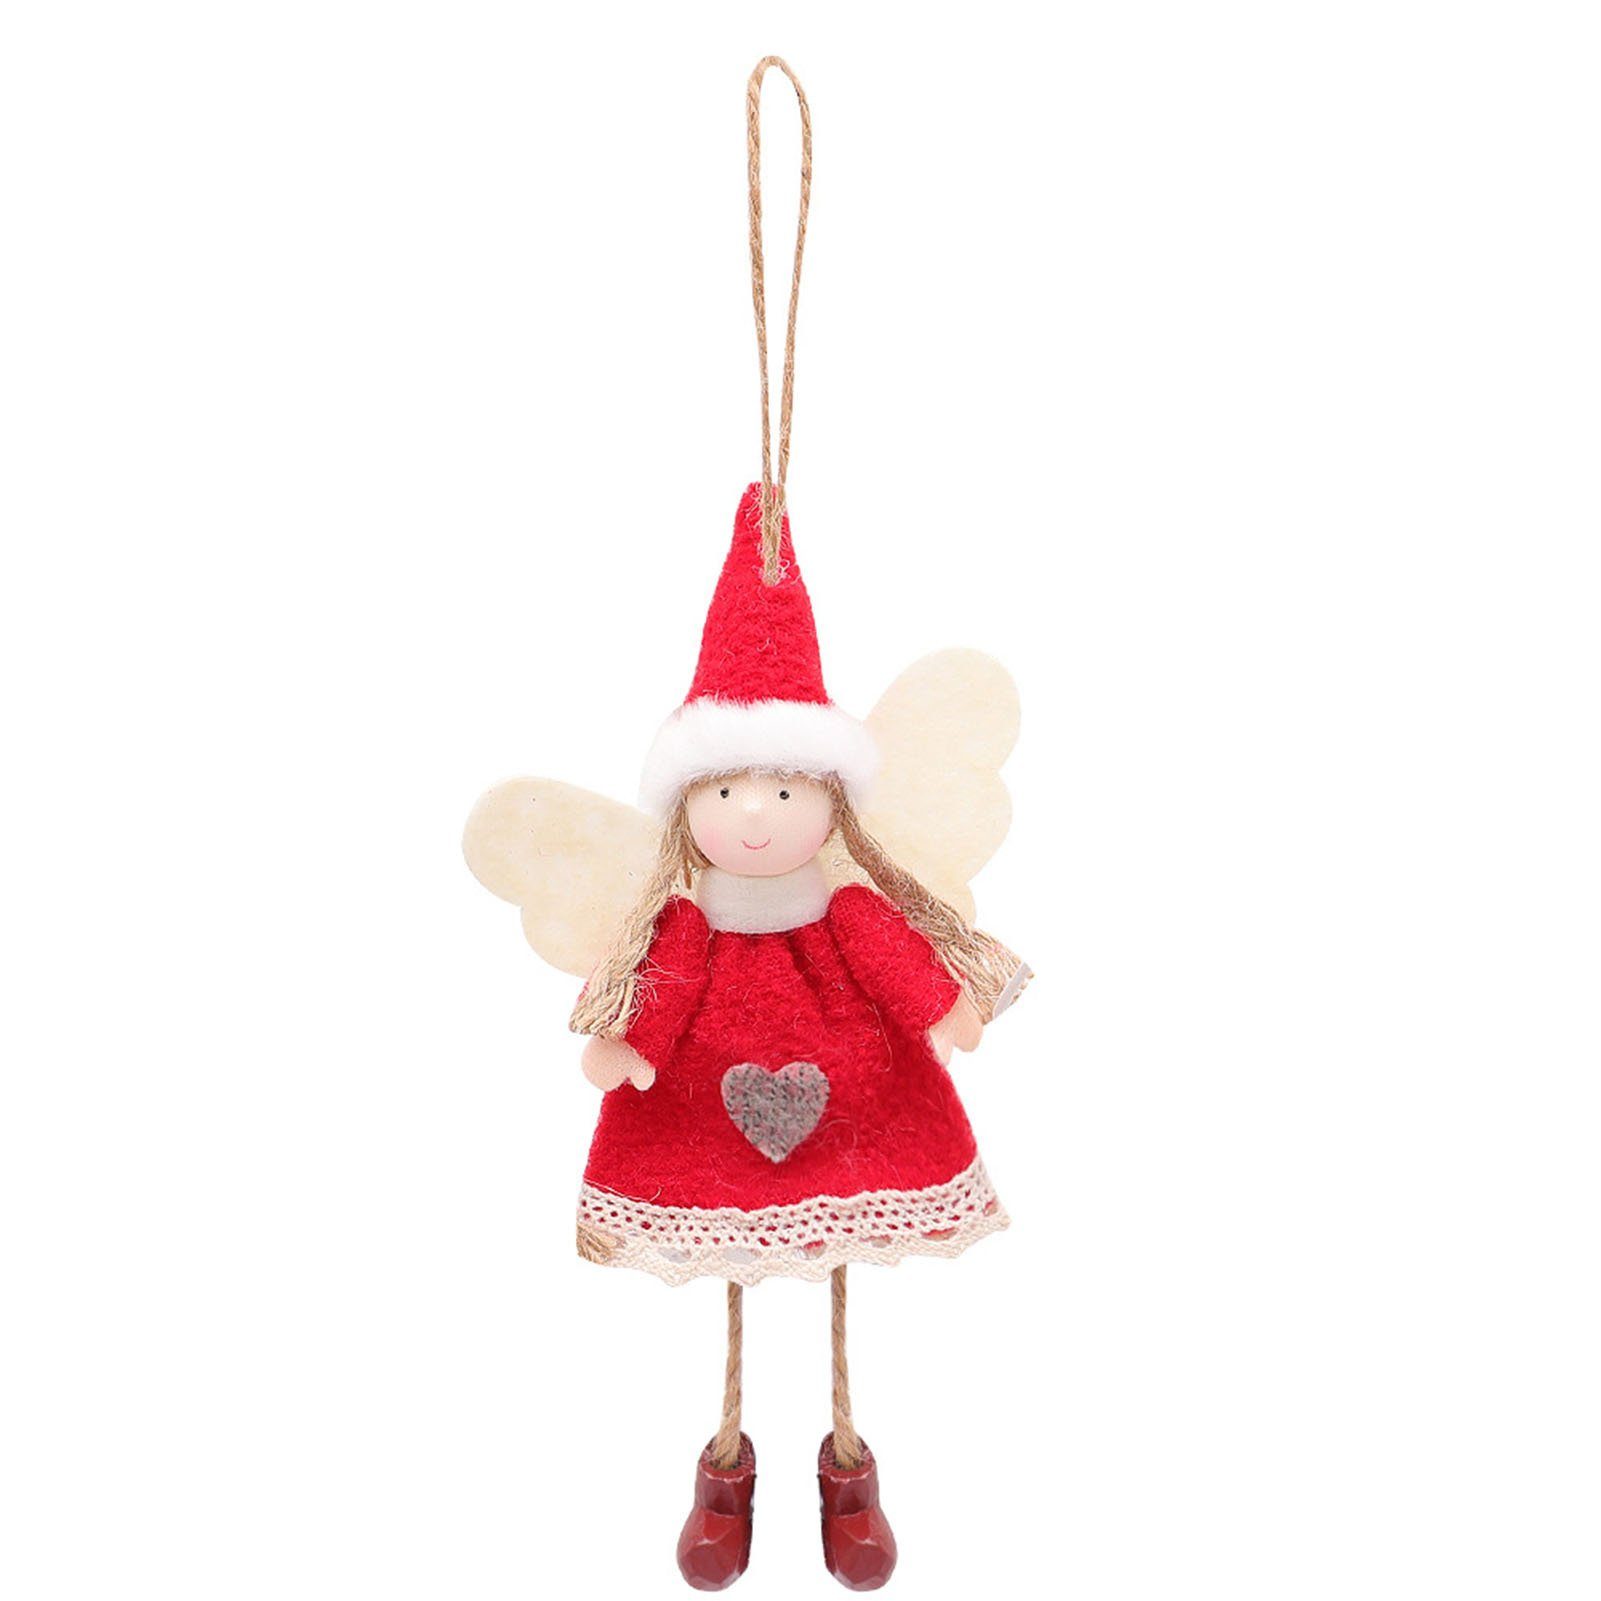 Blusmart Christbaumschmuck Weihnachten Handgemachte Engel-Form Kunsthandwerk Modische red dress | Dekohänger